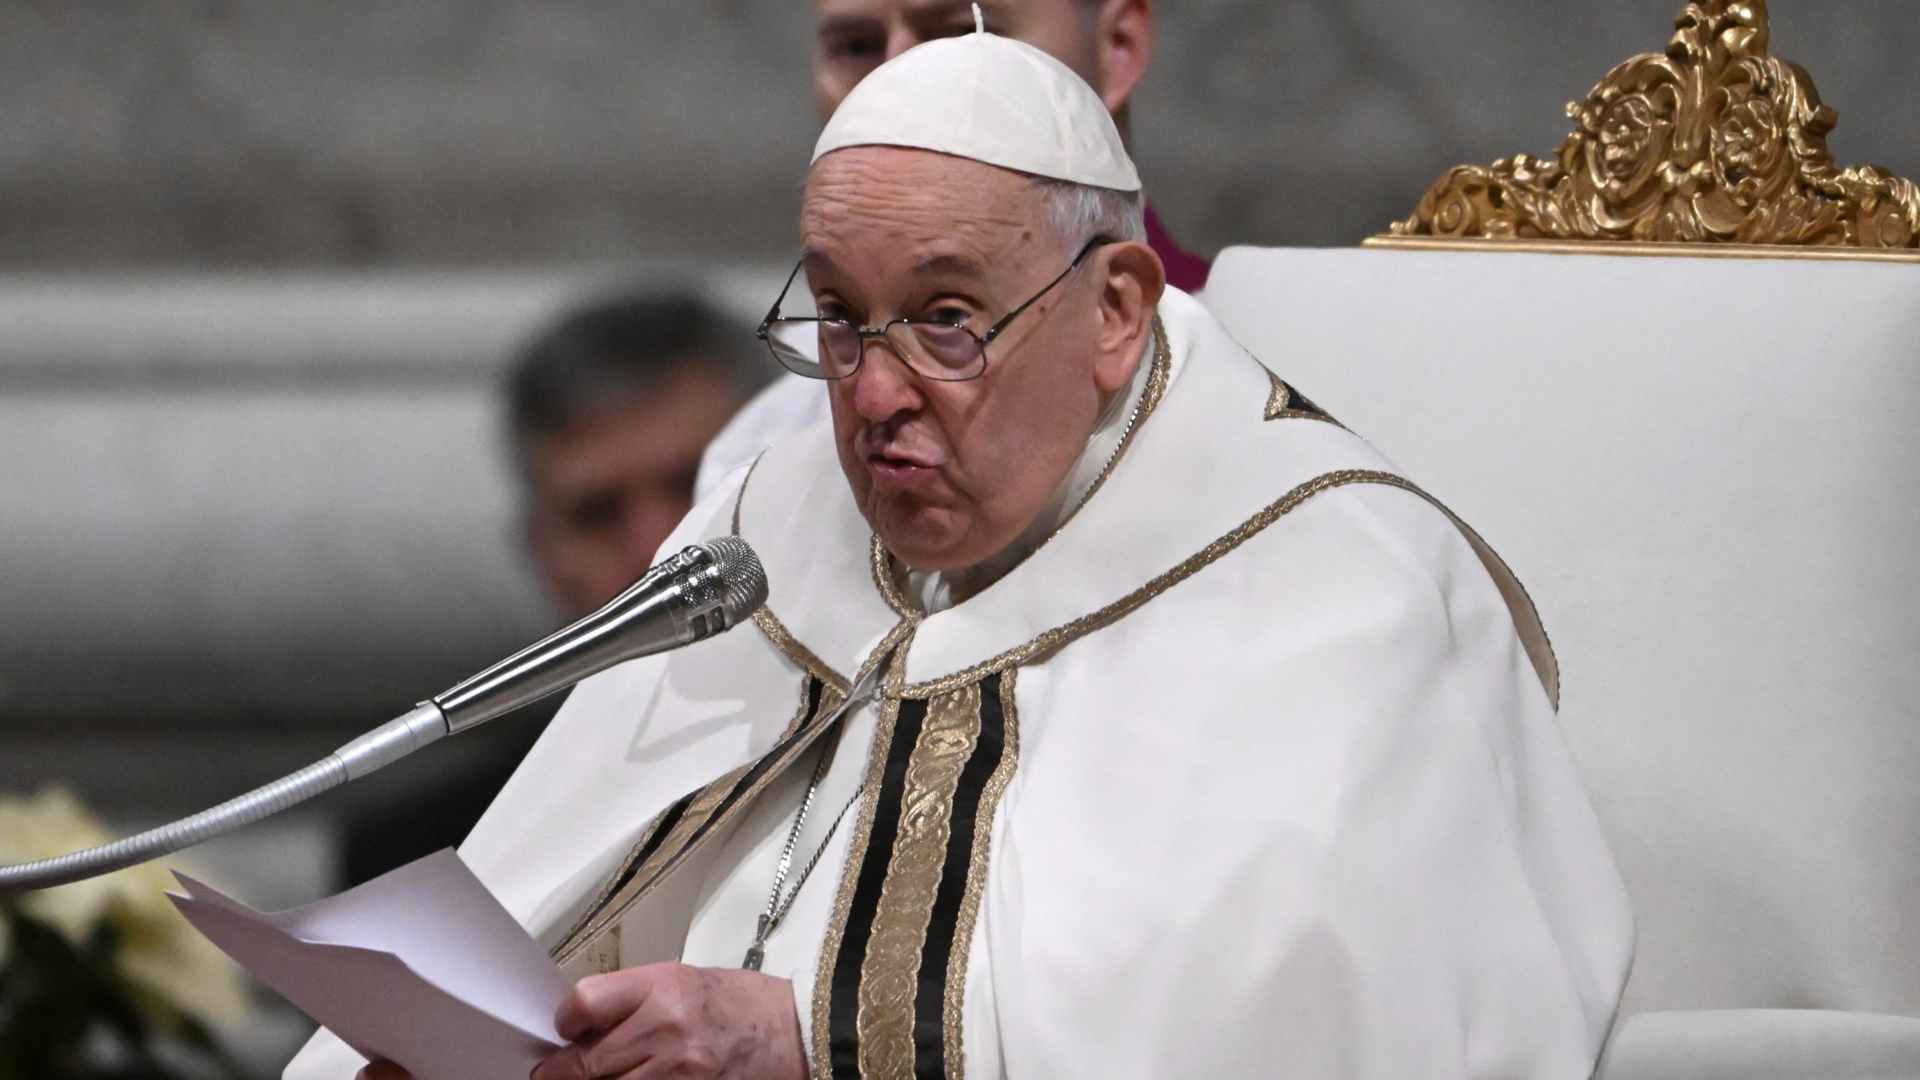 "Para que los fieles no se duerman": Papa Francisco exhorta a hacer misas más cortas